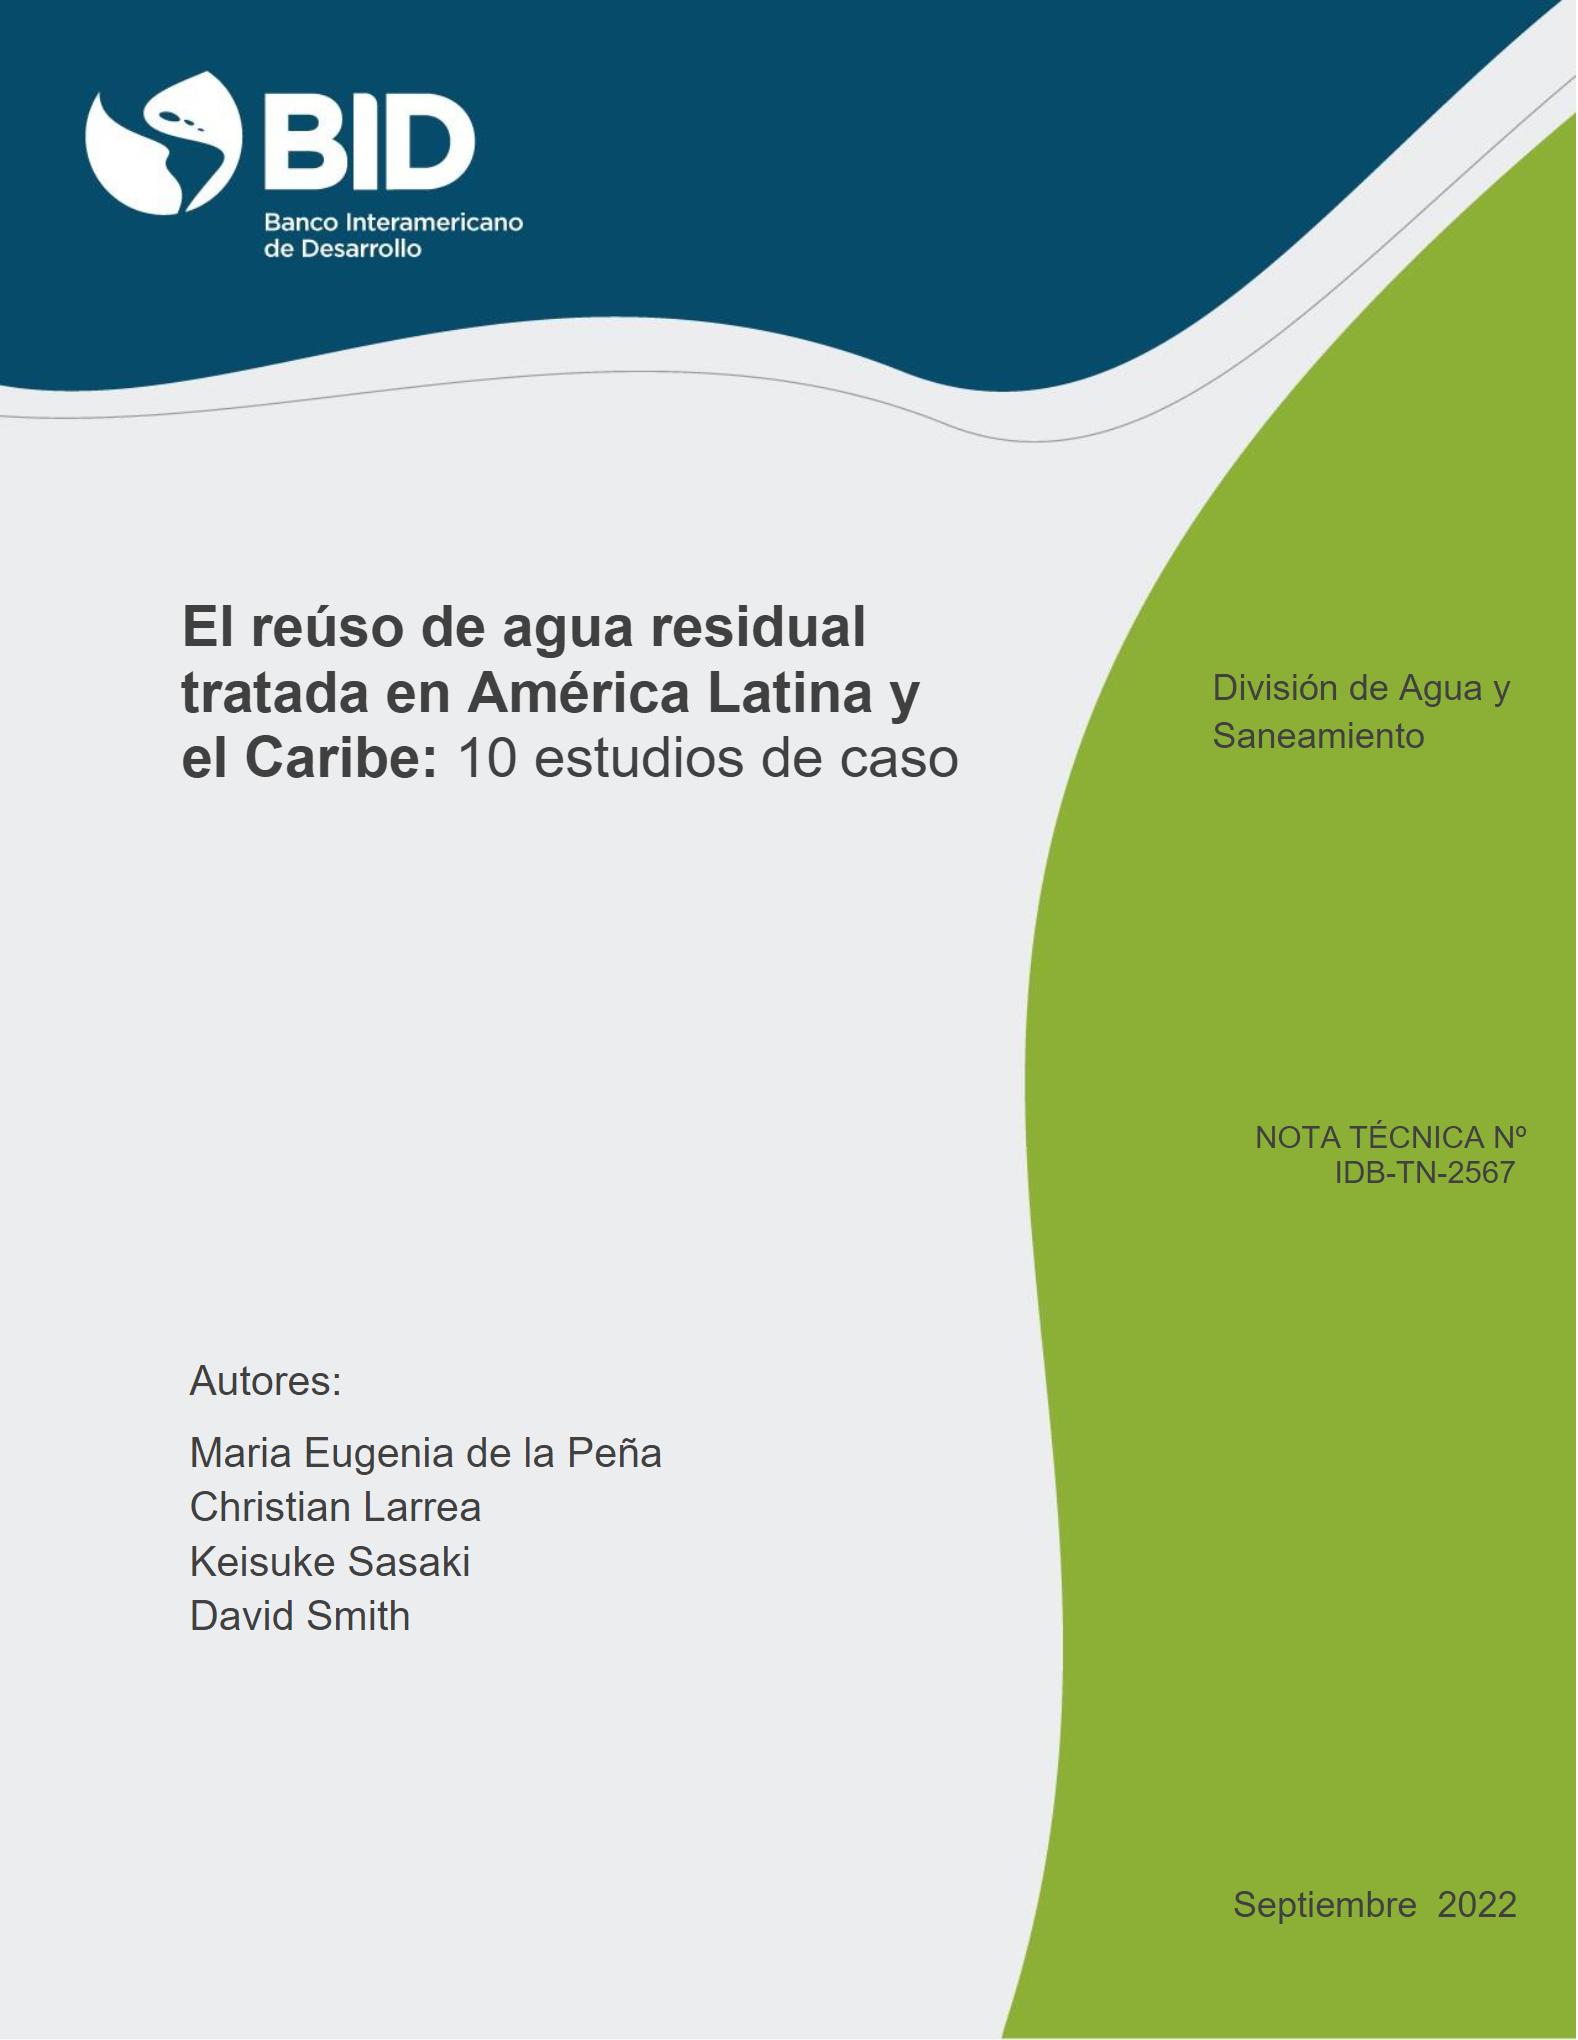 El reúso de agua residual tratada en América Latina y el Caribe: 10 estudios de caso (BID)